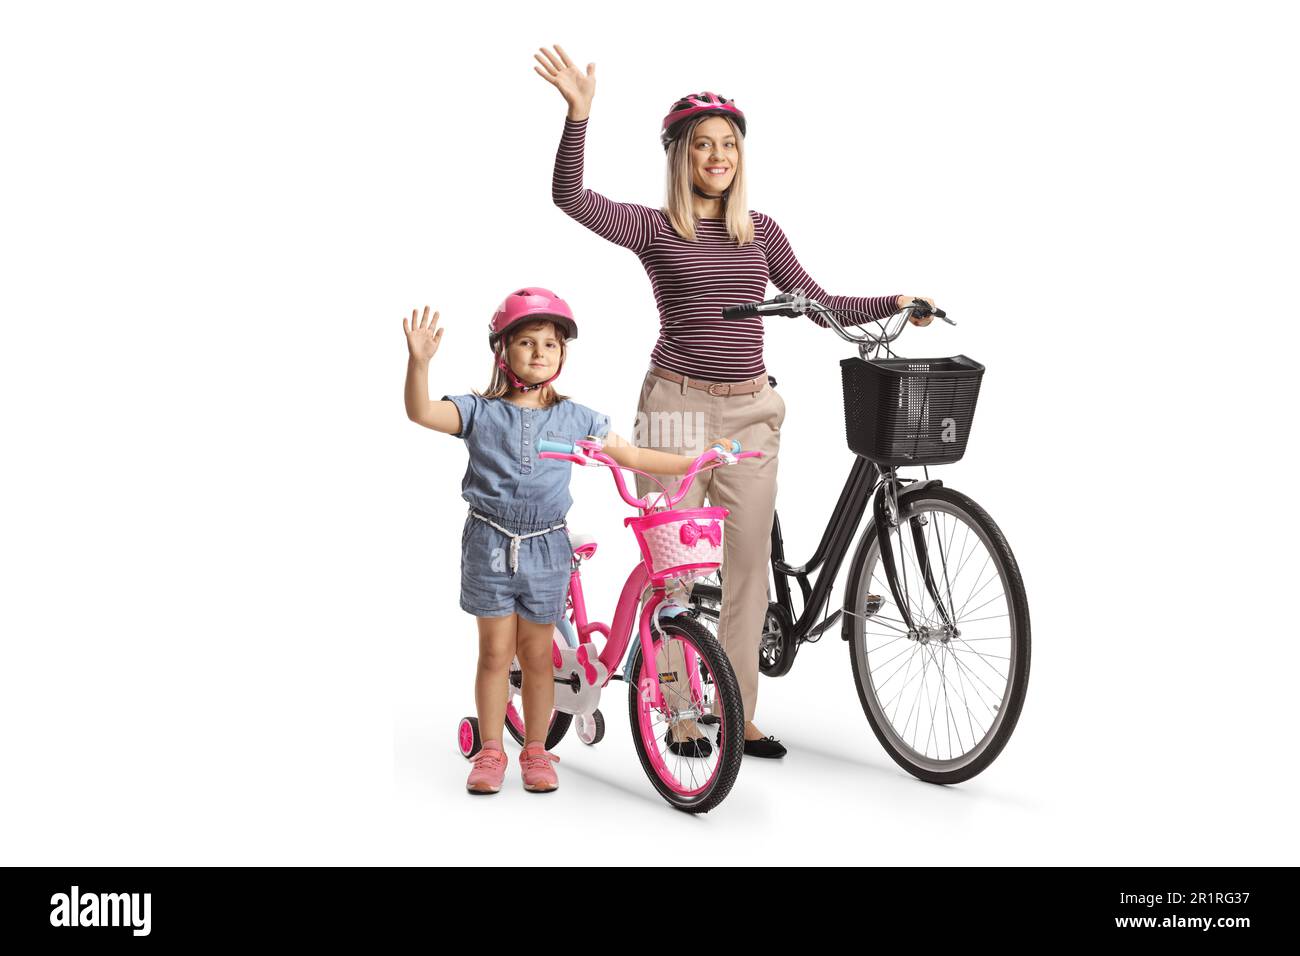 Bambina con la madre che agita e si alza in piedi con una bicicletta isolata su sfondo bianco Foto Stock